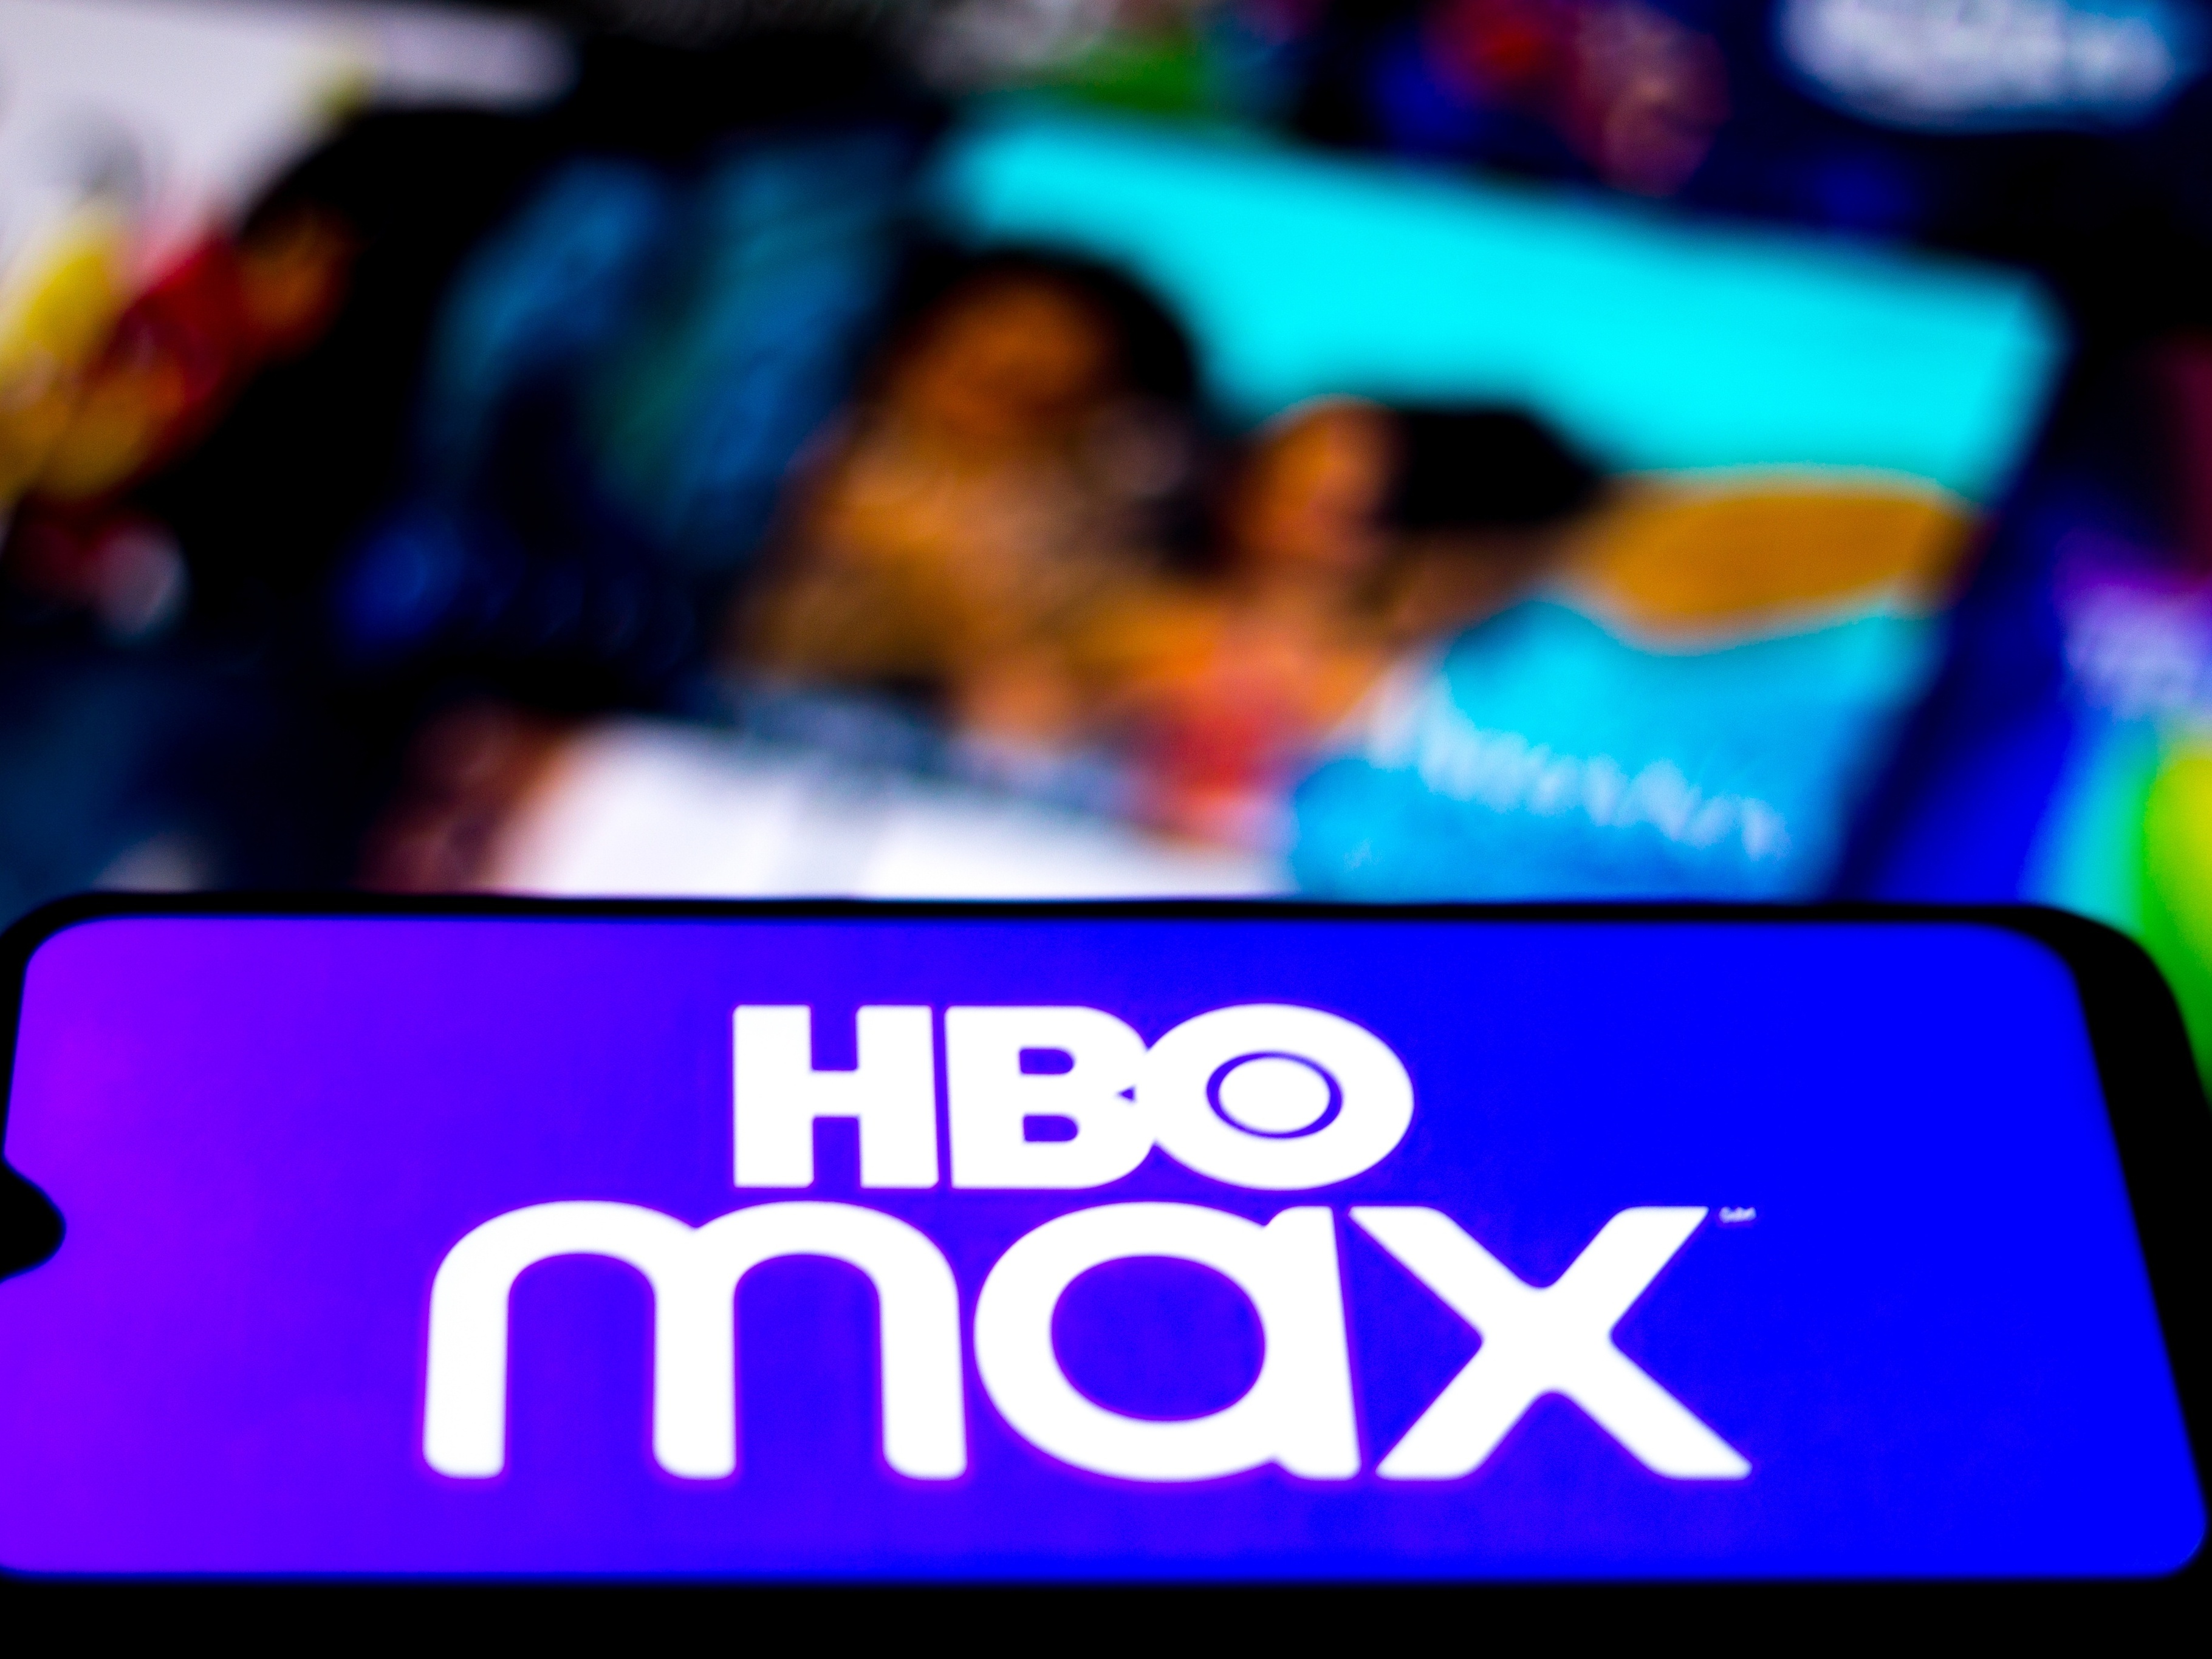 HBO Max Brasil on X: HBO Max vai se tornar Max no Brasil, trazendo pra  você títulos originais HBO, séries aclamadas, filmes, reality shows e muito  mais. Mais informações vão ser compartilhadas